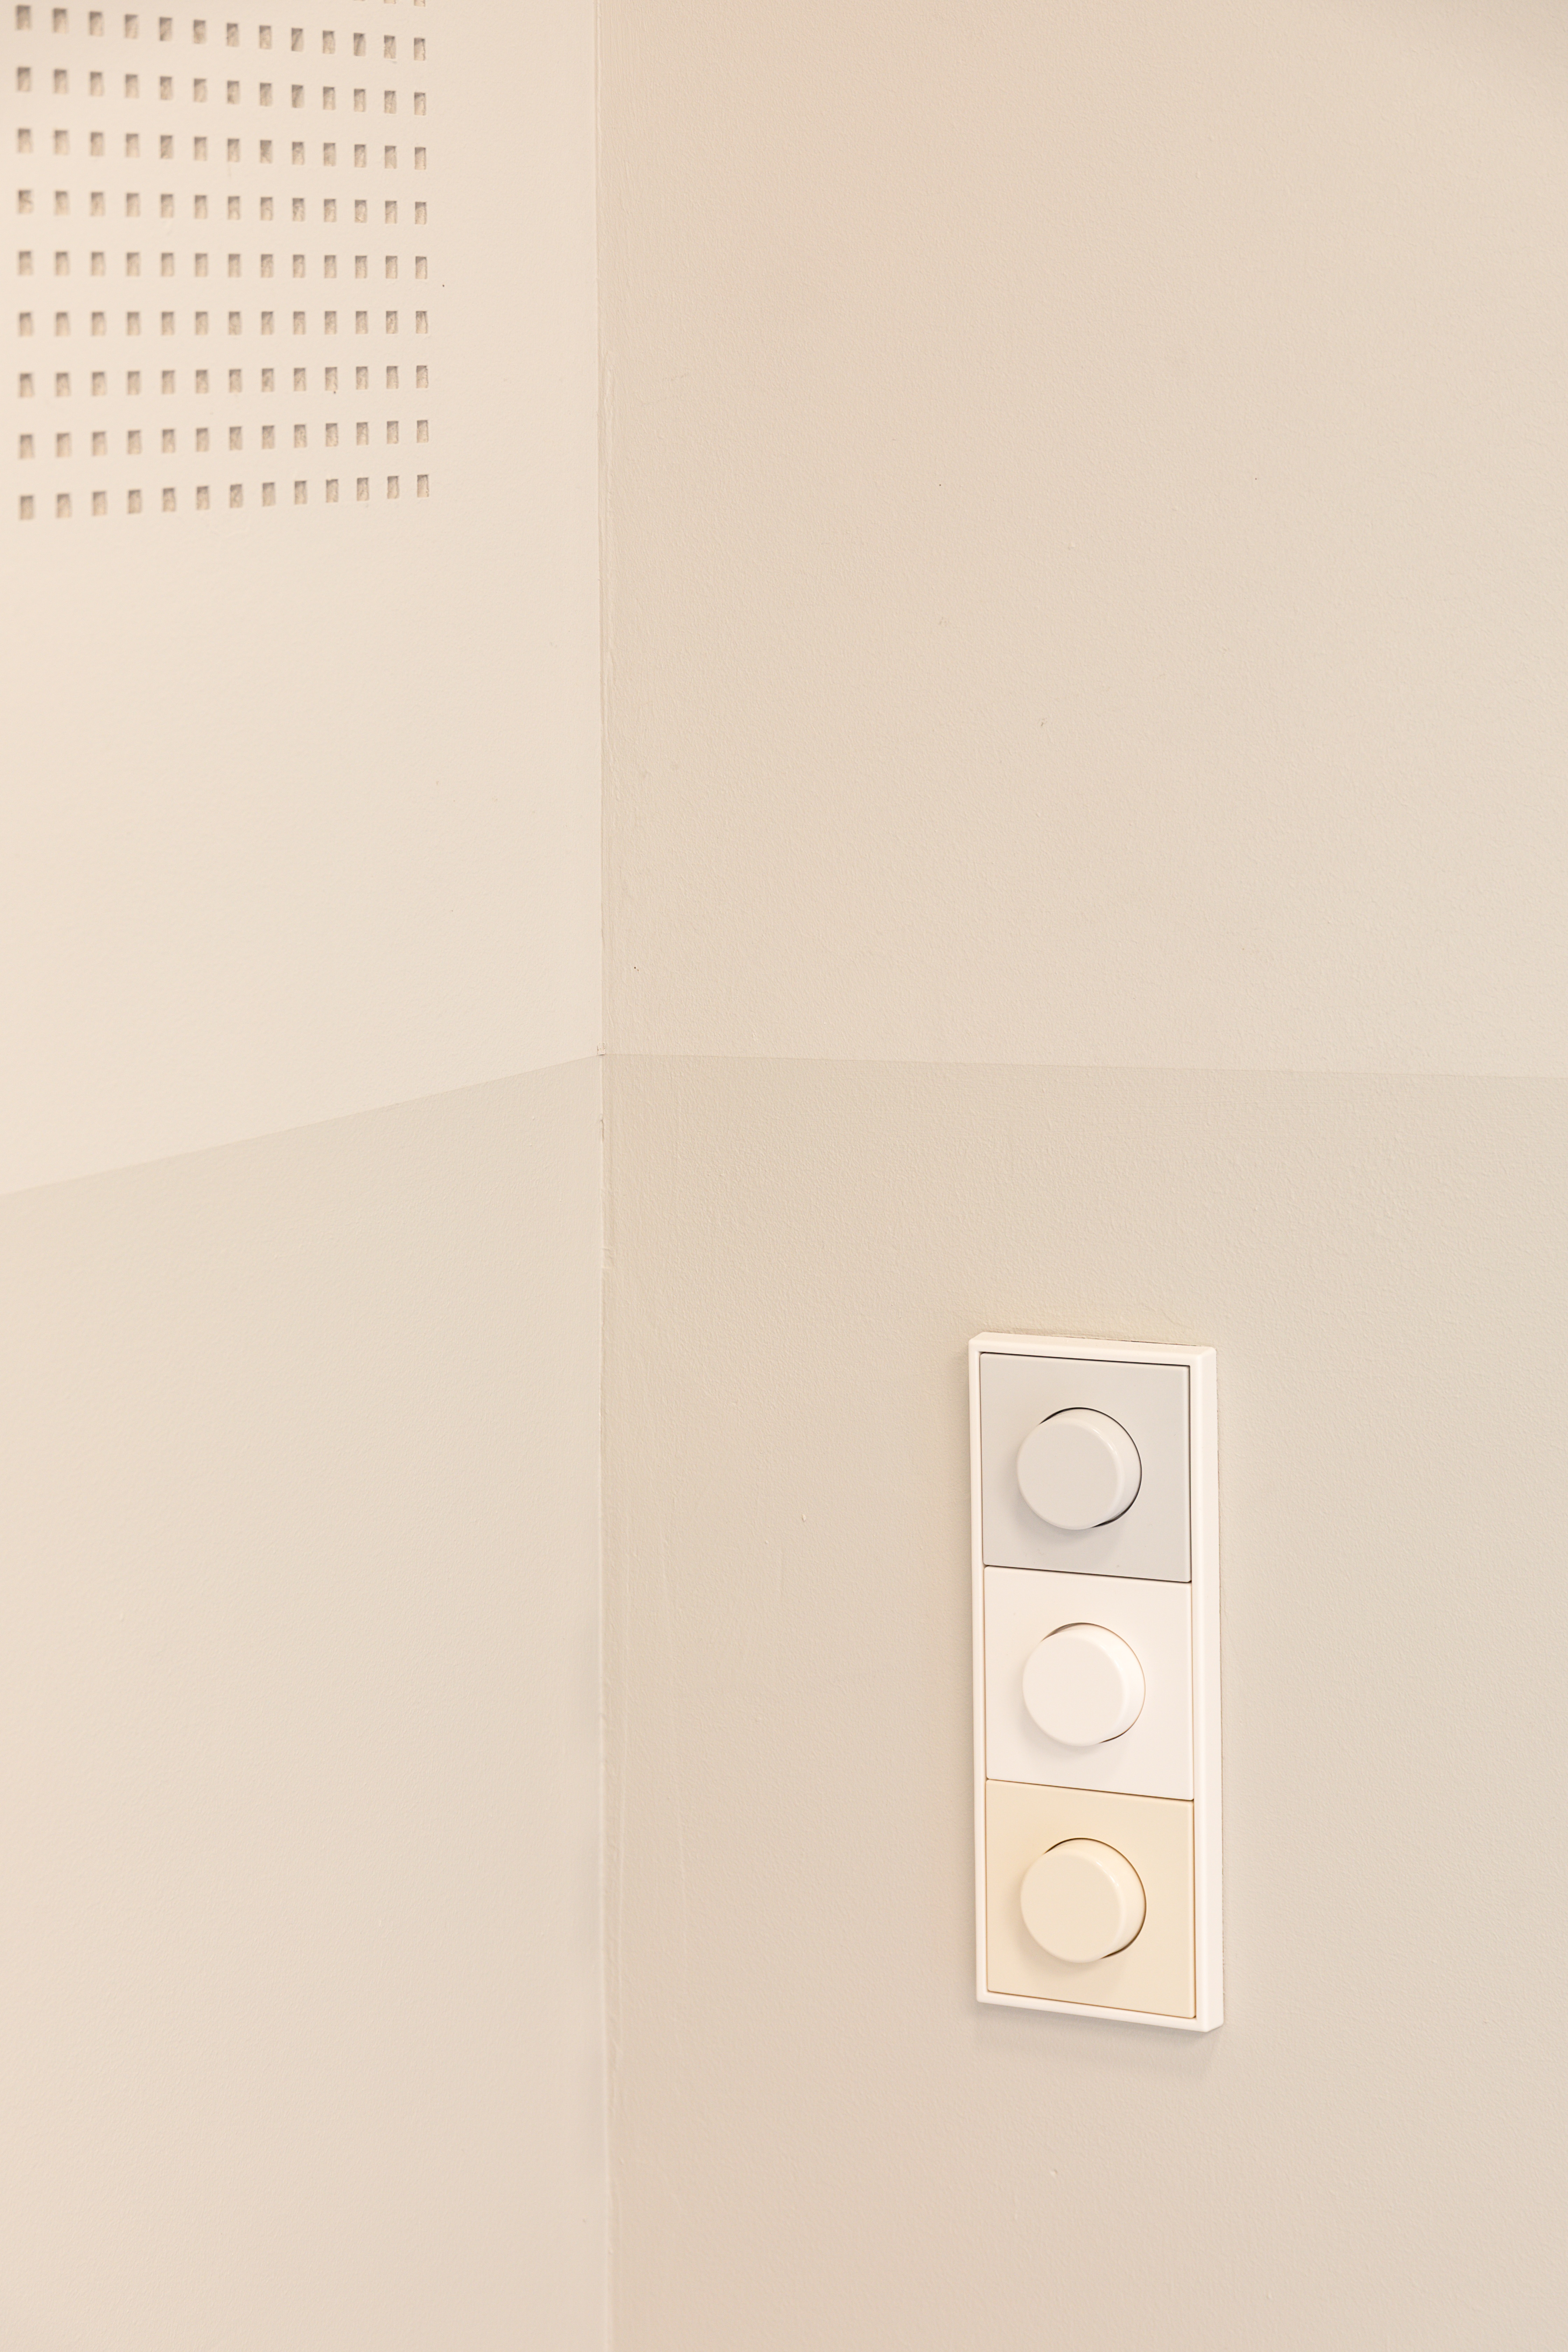 Detail Lichtschalter Jung Farben Architektur Design spielerisch Kita